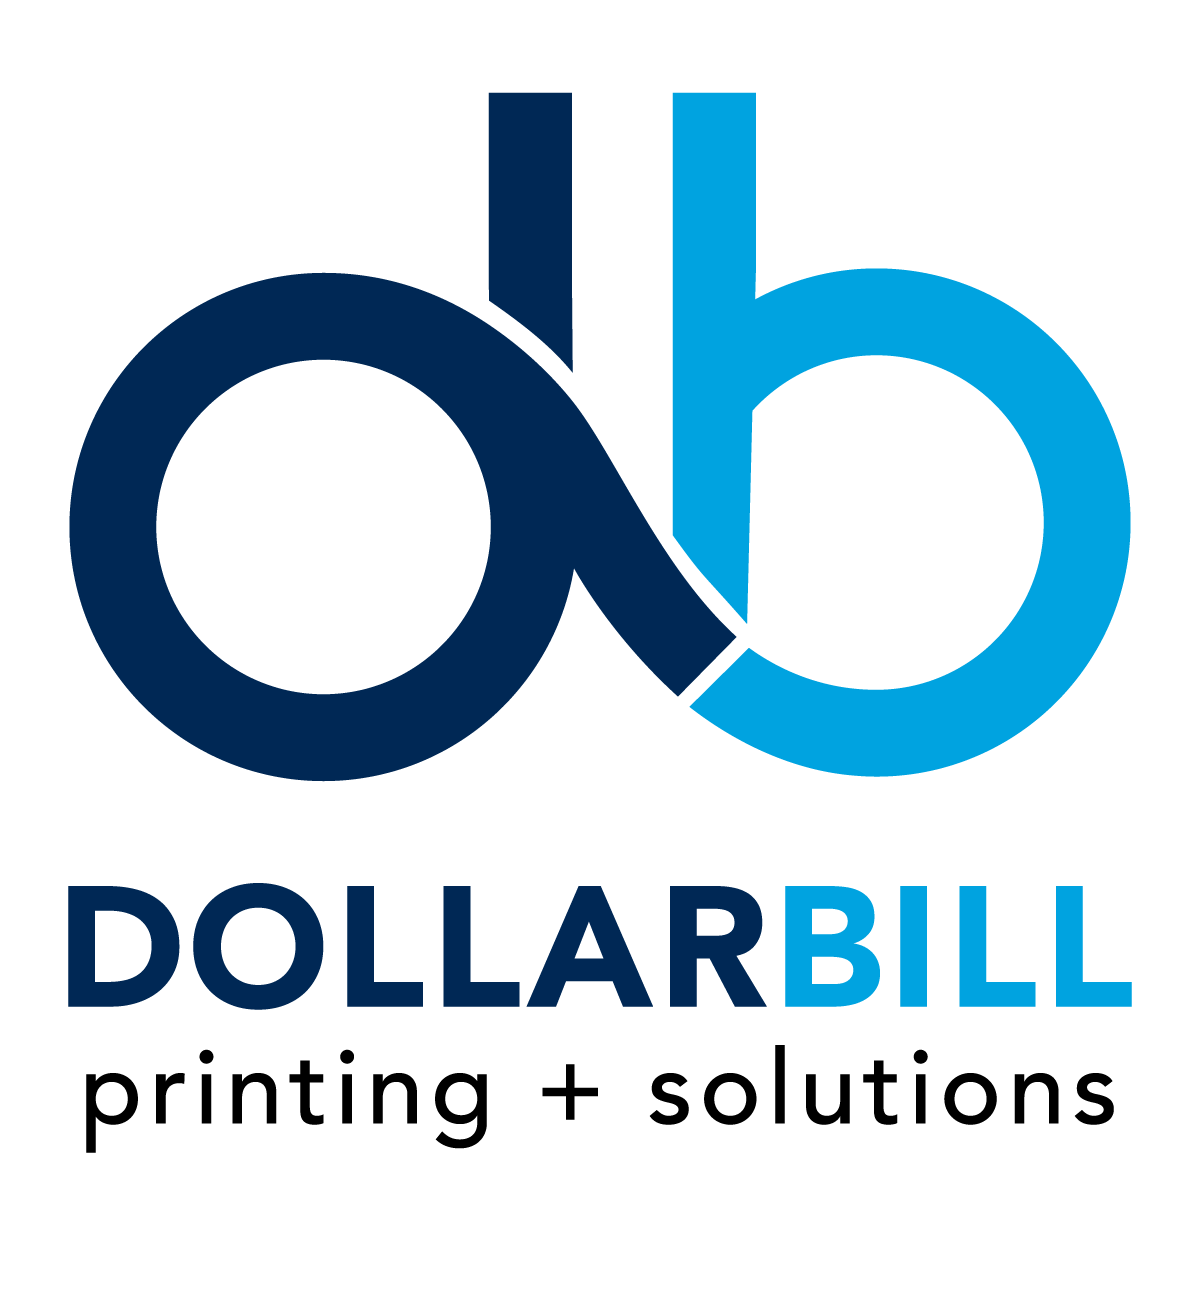 Dollar Bill Printing